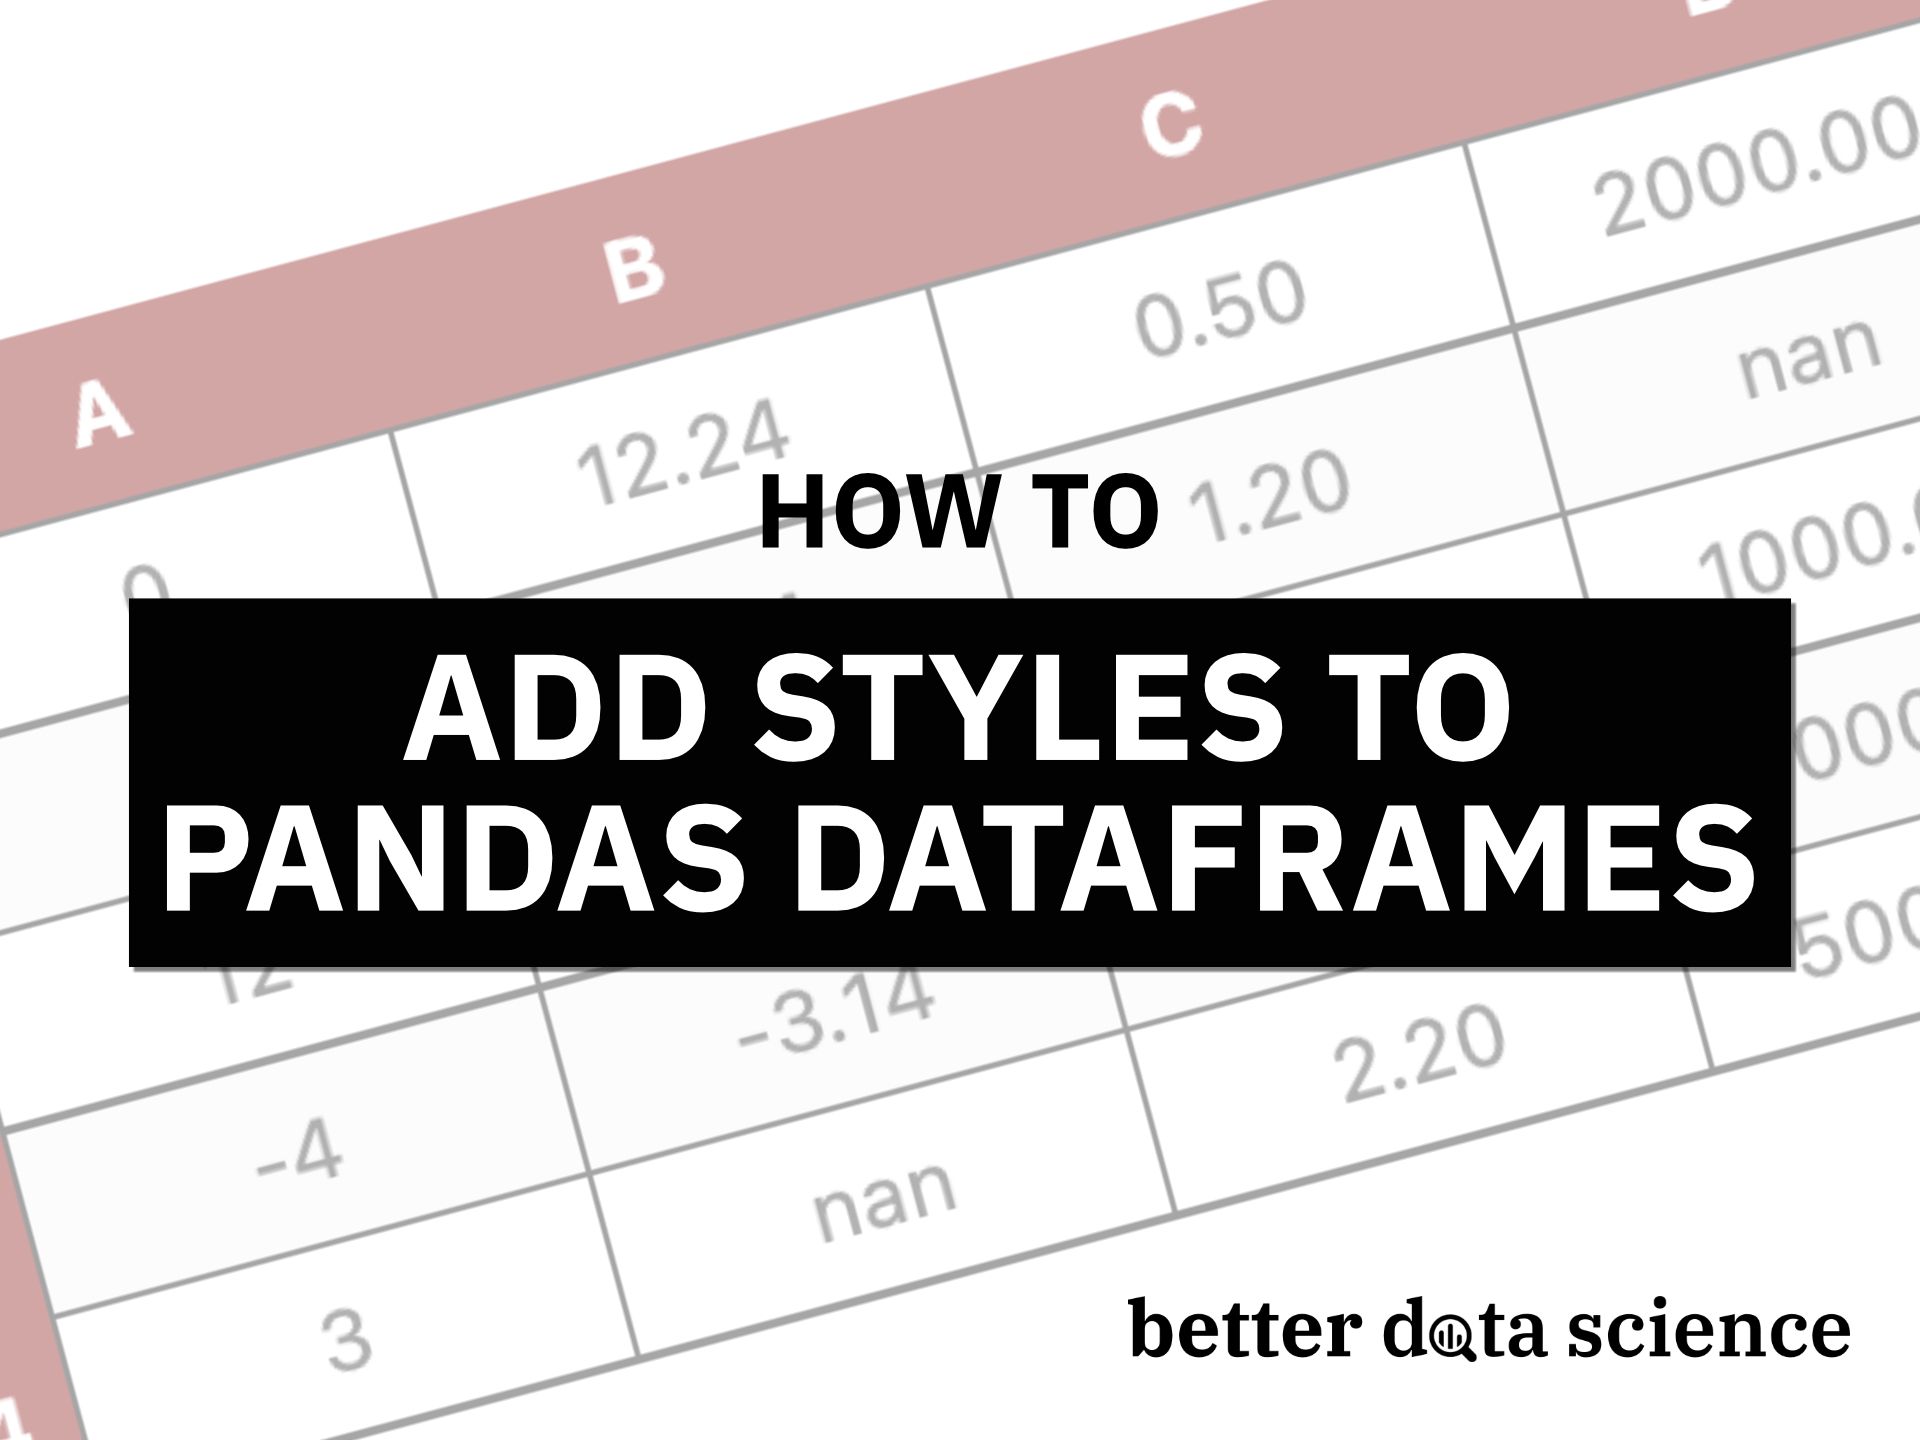 Tuyệt vời! Bạn sắp tìm kiếm các kỹ thuật trang trí Pandas DataFrames chuyên nghiệp? Hãy xem hình ảnh liên quan để tìm hiểu những cách thức độc đáo, cùng những lời khuyên hữu ích để tạo ra bảng dữ liệu chuyên nghiệp và chất lượng nhất.